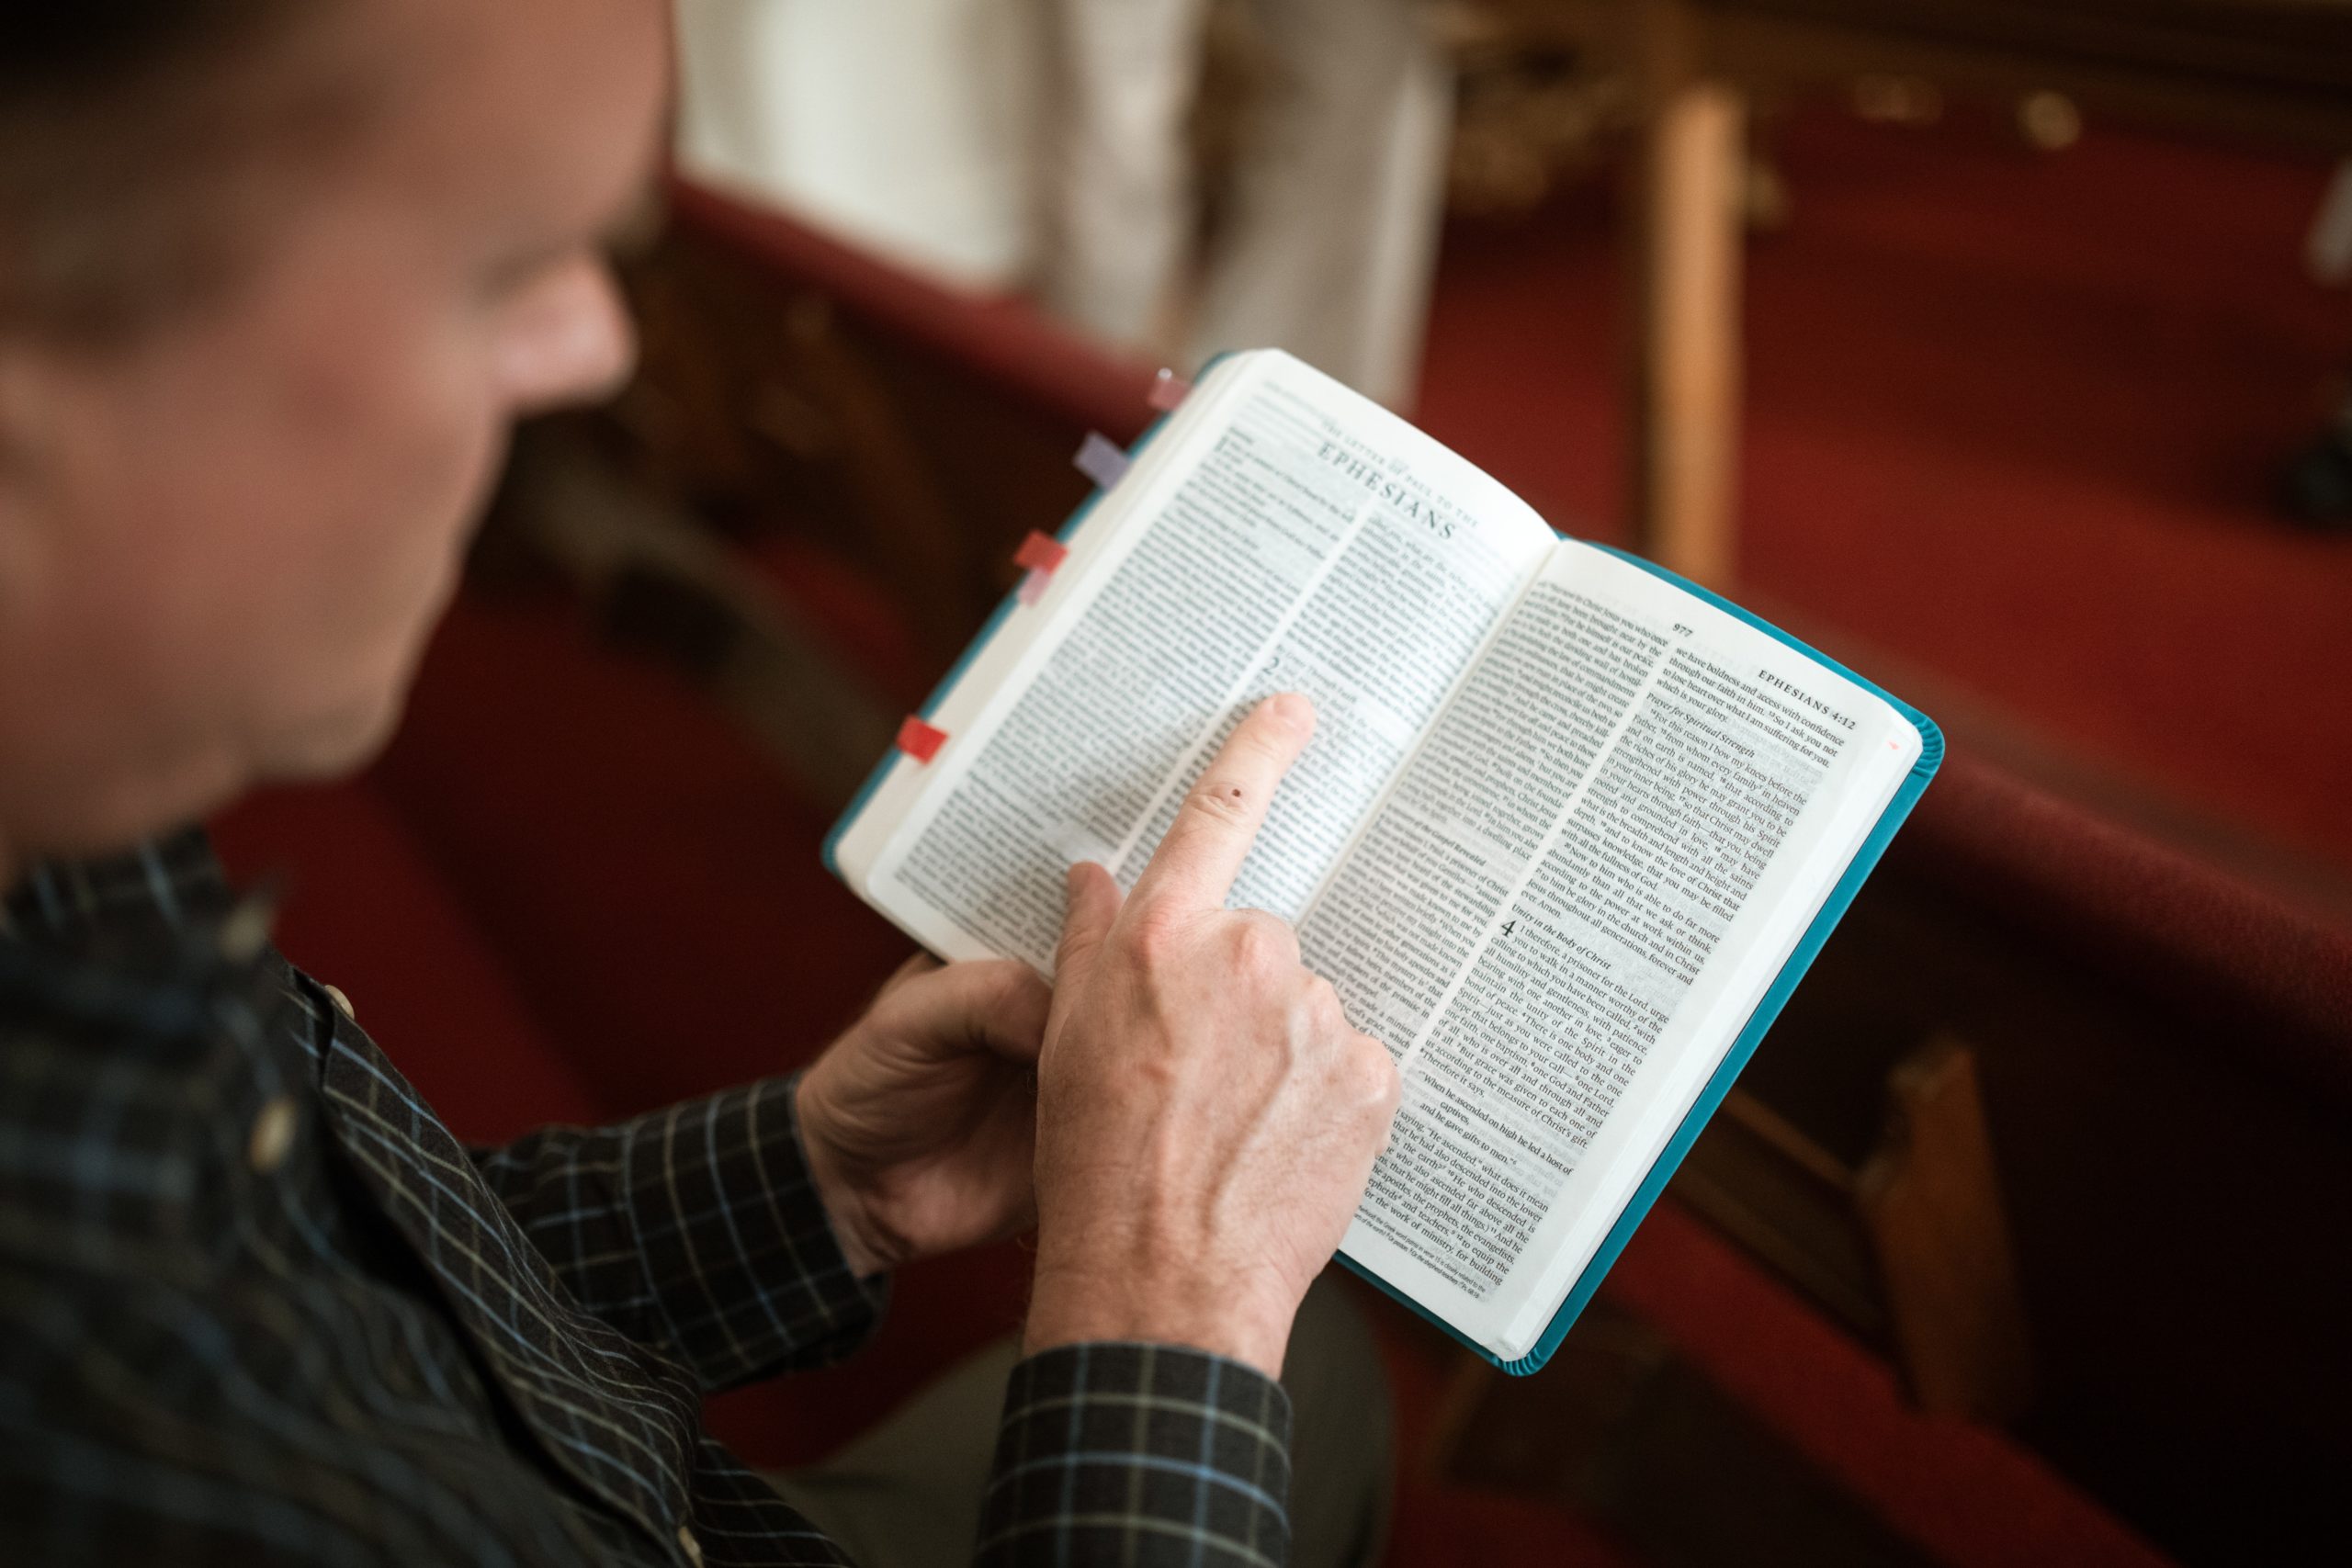 The Daily Examine Prayer